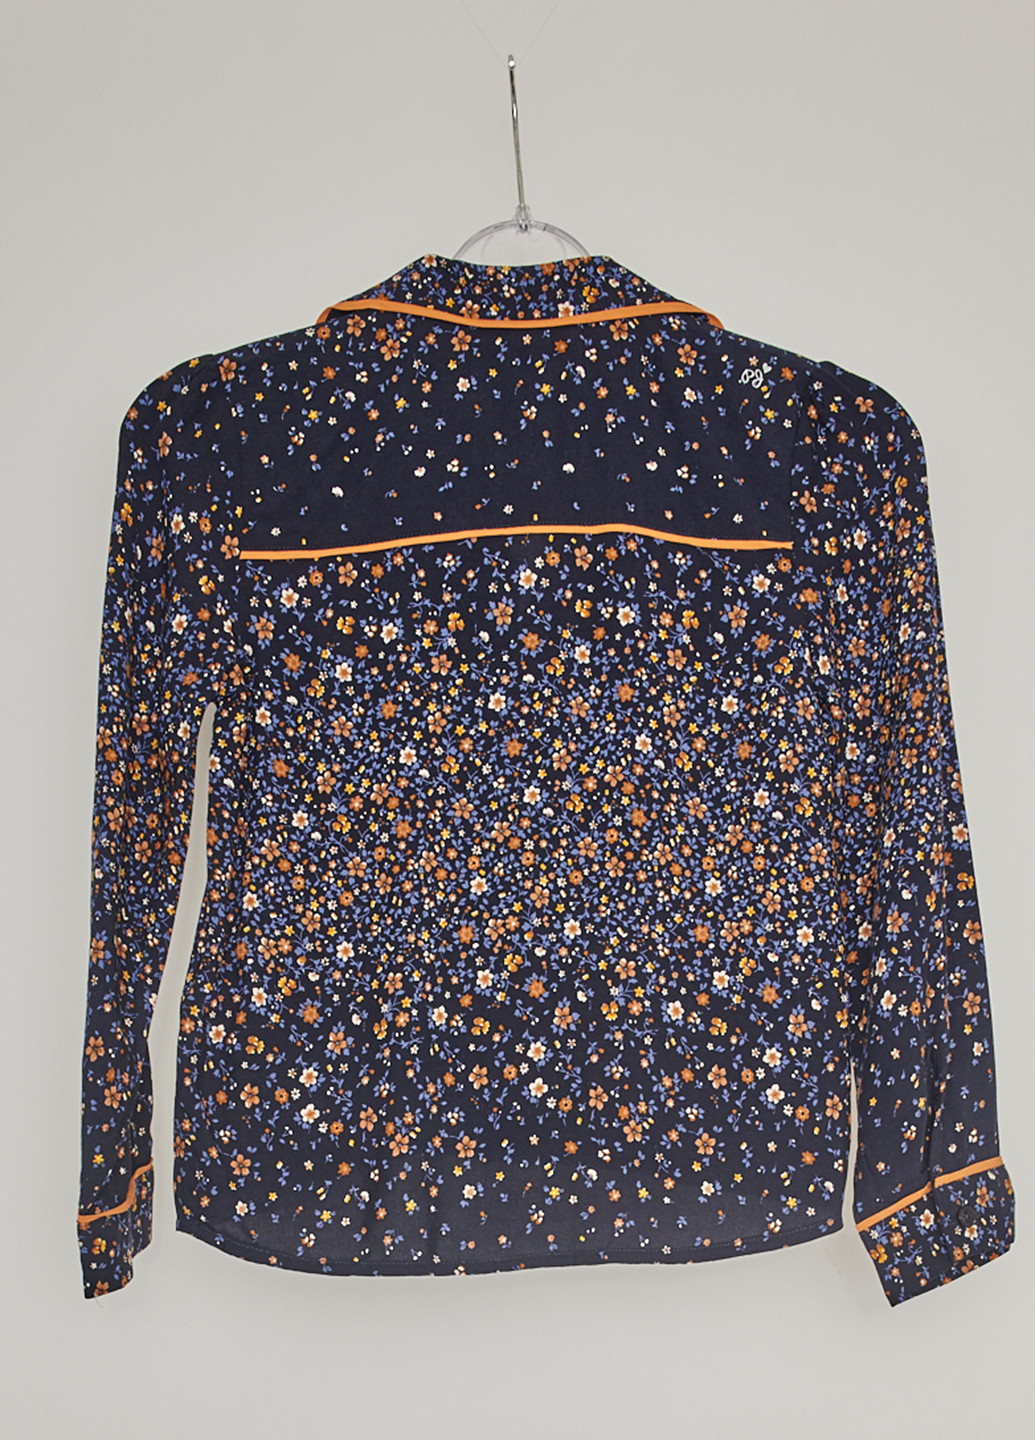 Синяя с абстрактным узором блузка с длинным рукавом Pepe Jeans демисезонная